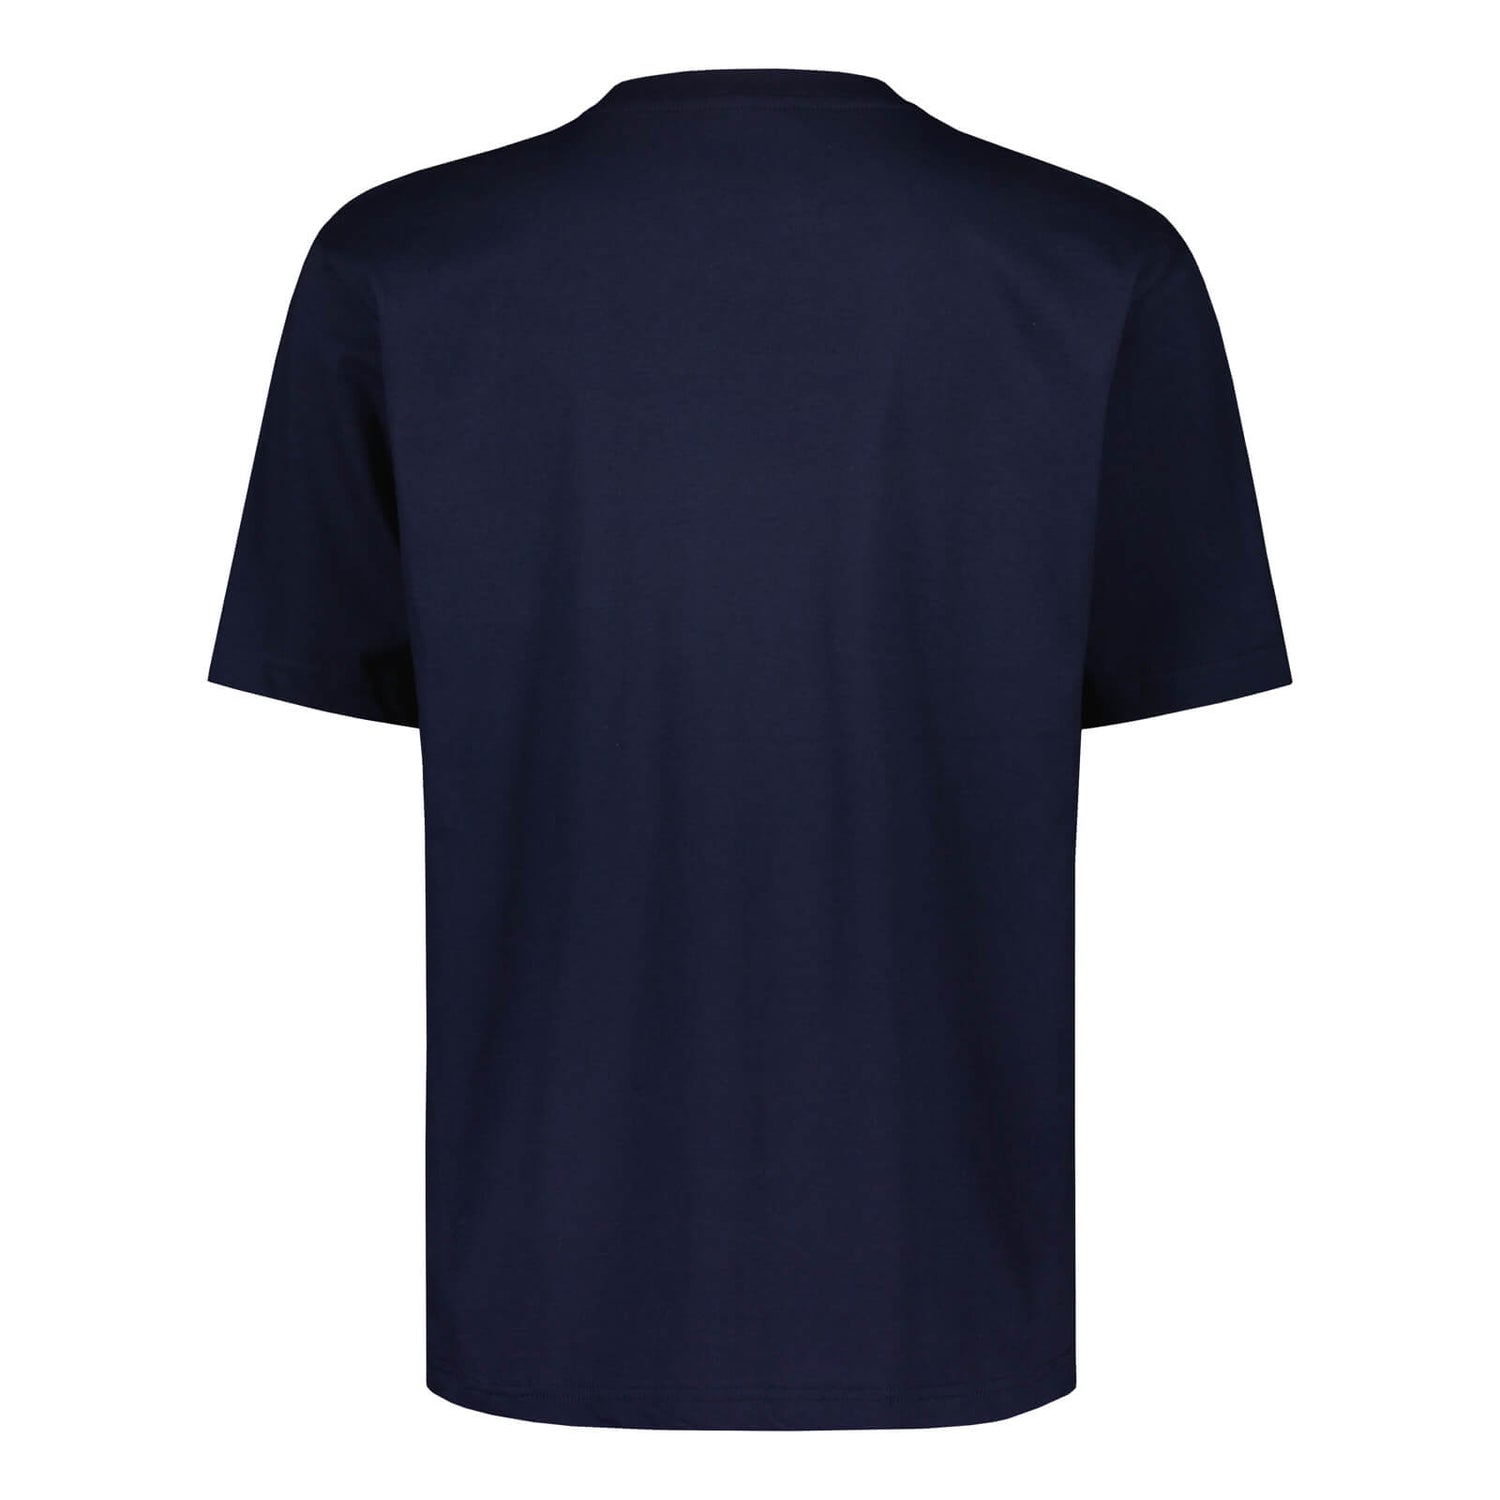 Teemu Pukki #10 fan shirt, Navy blue, Kids